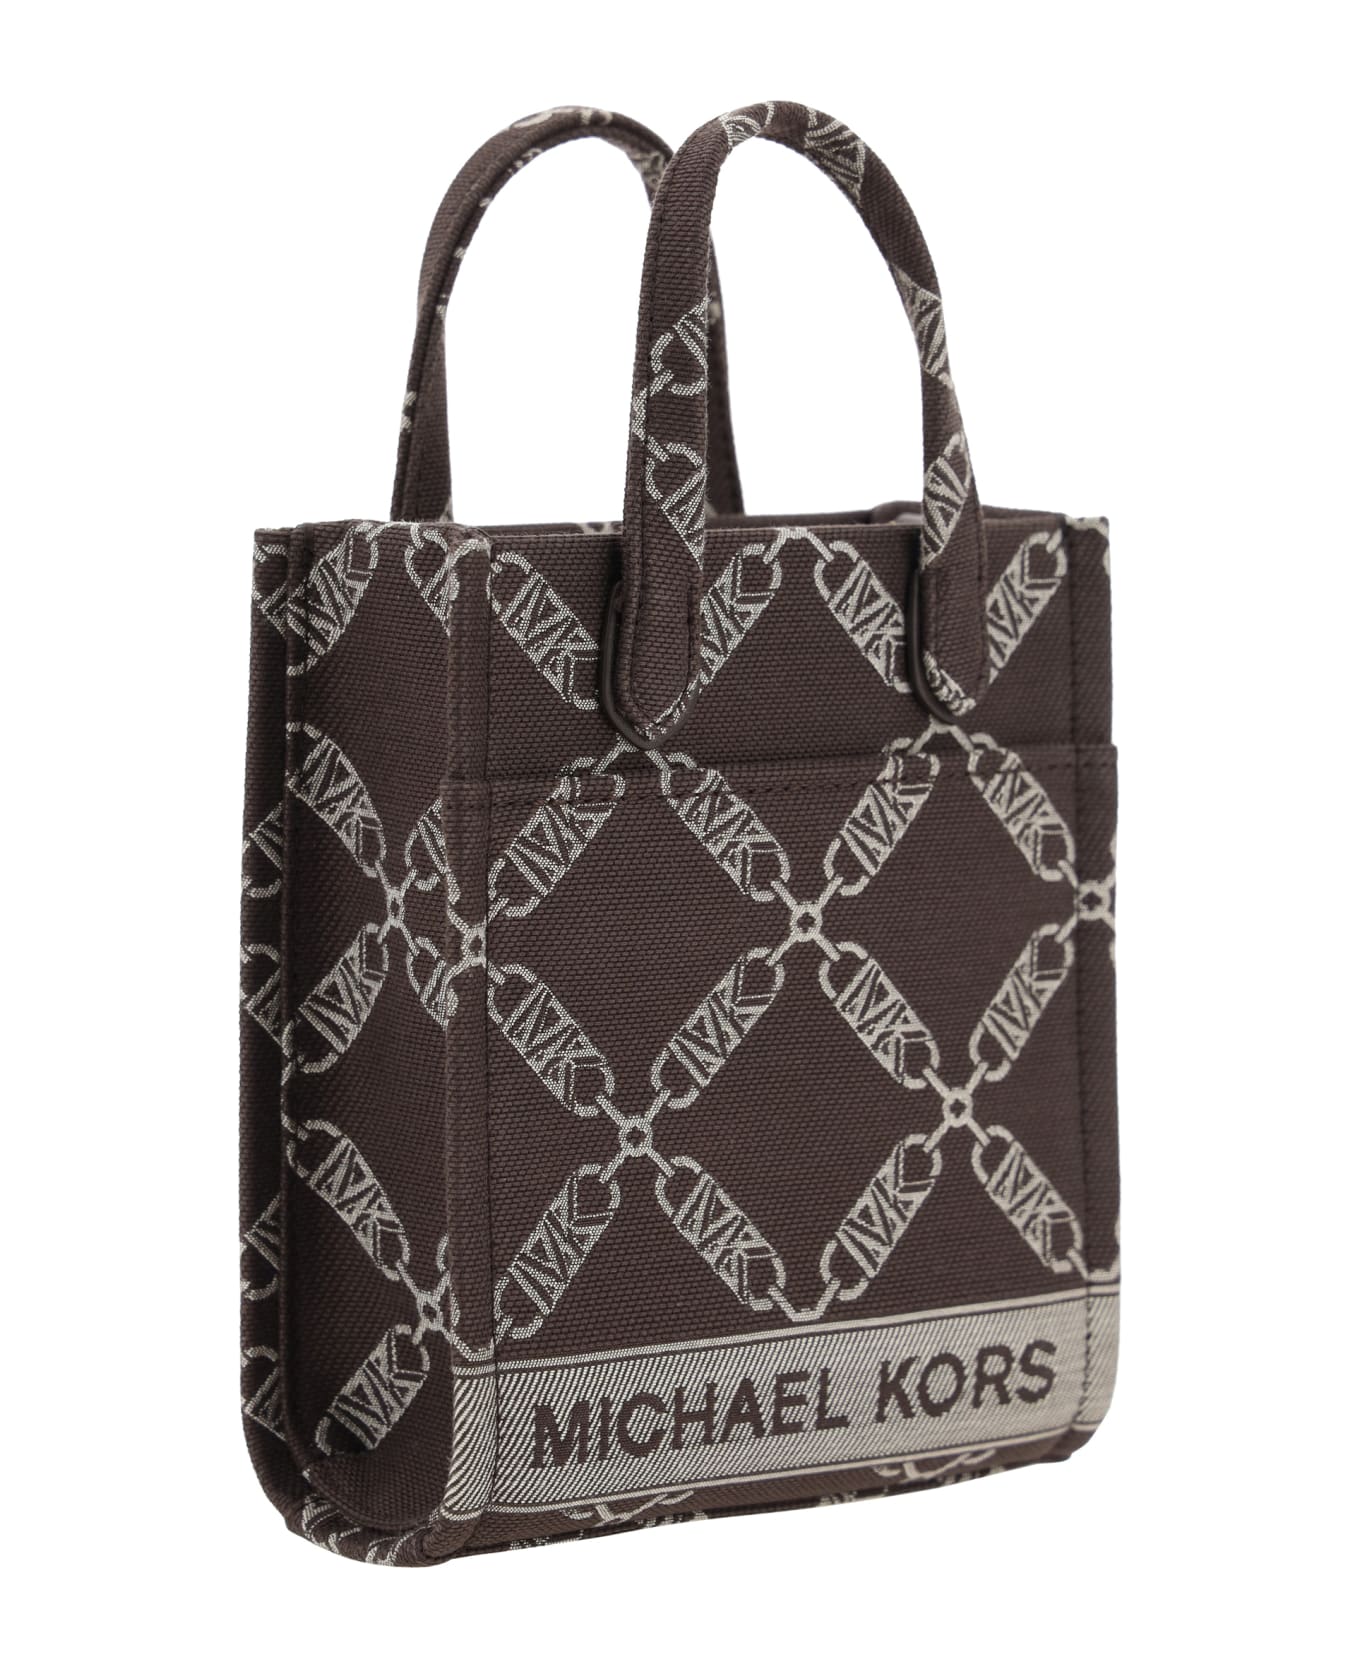 Michael Kors Jacquard Logo Shopper Bag - Choc Multi